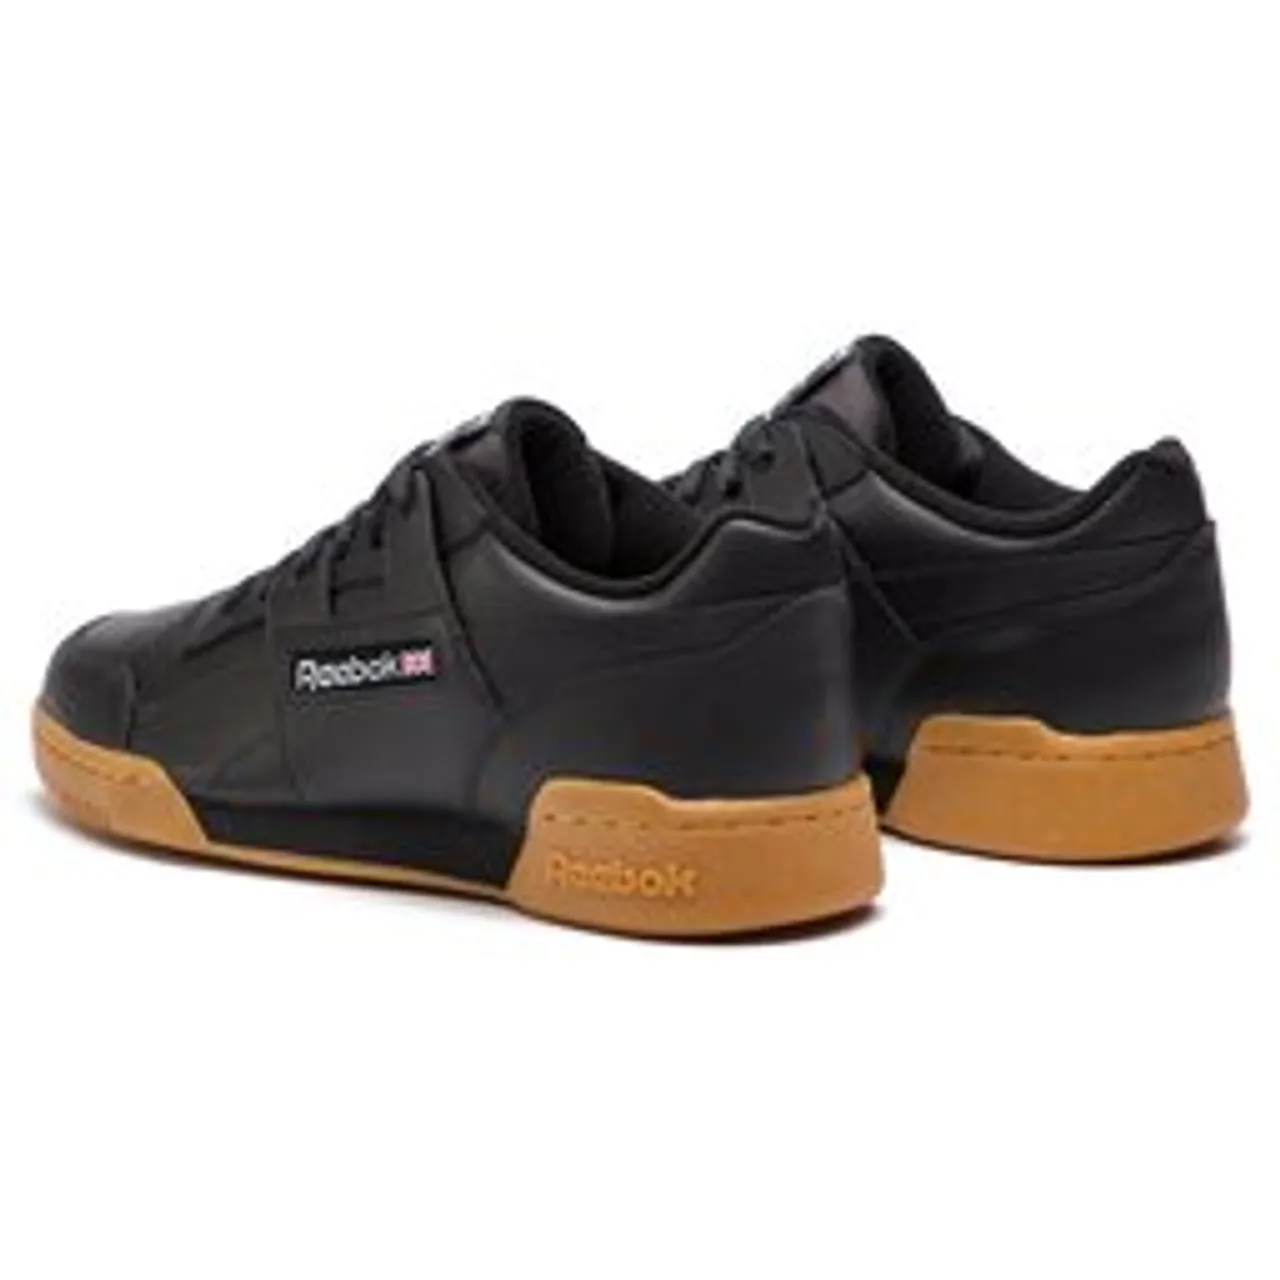 Schuhe Reebok Workout Plus CN2127 Black/Carbon/Red/Royal